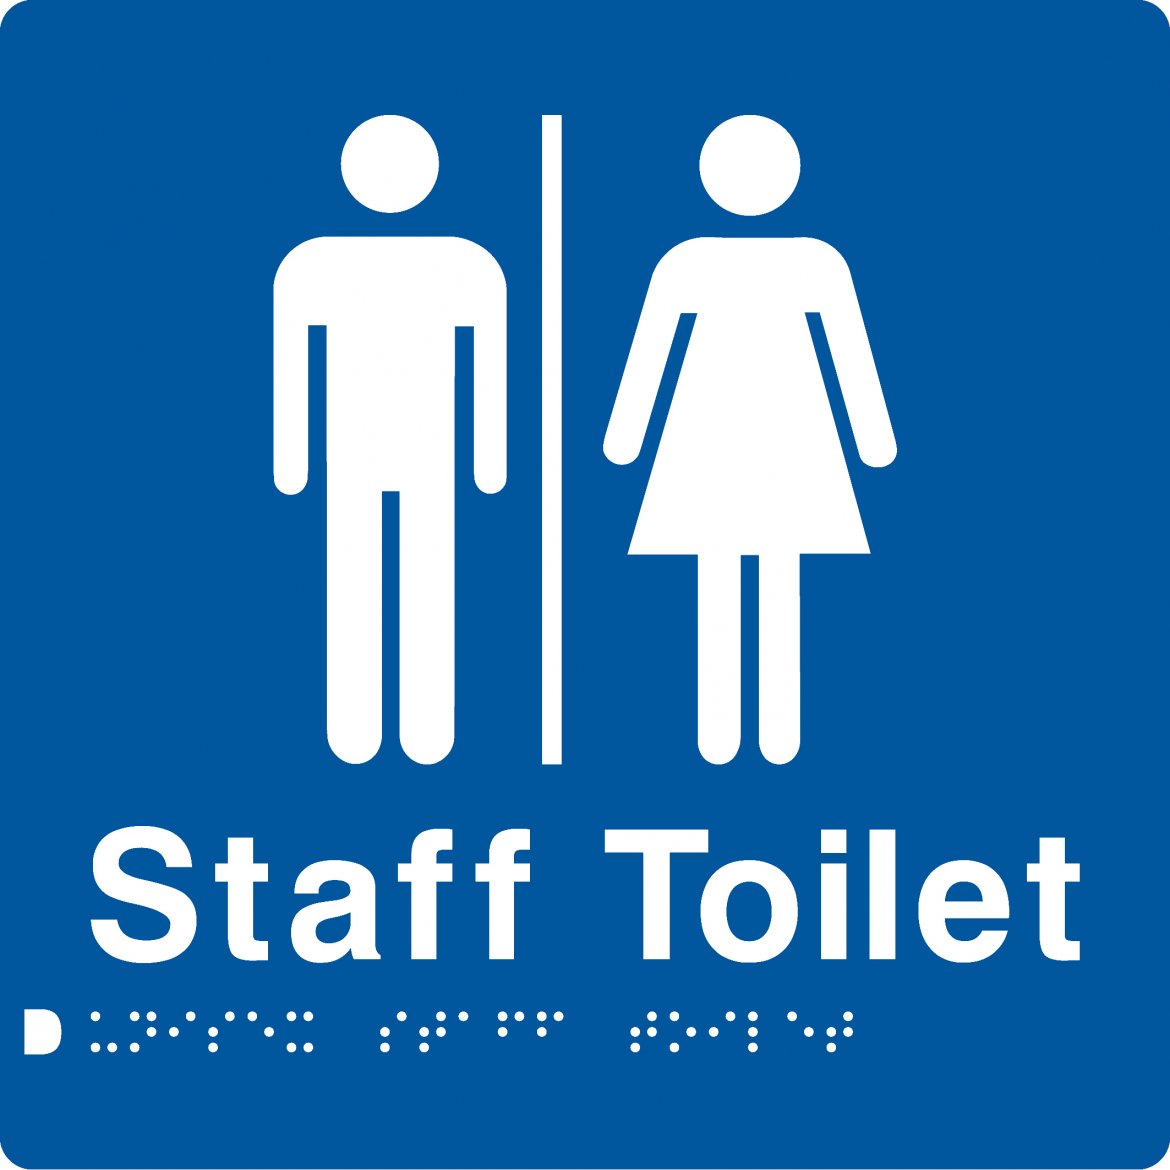 Restroom Signage Clip Art - Image to u